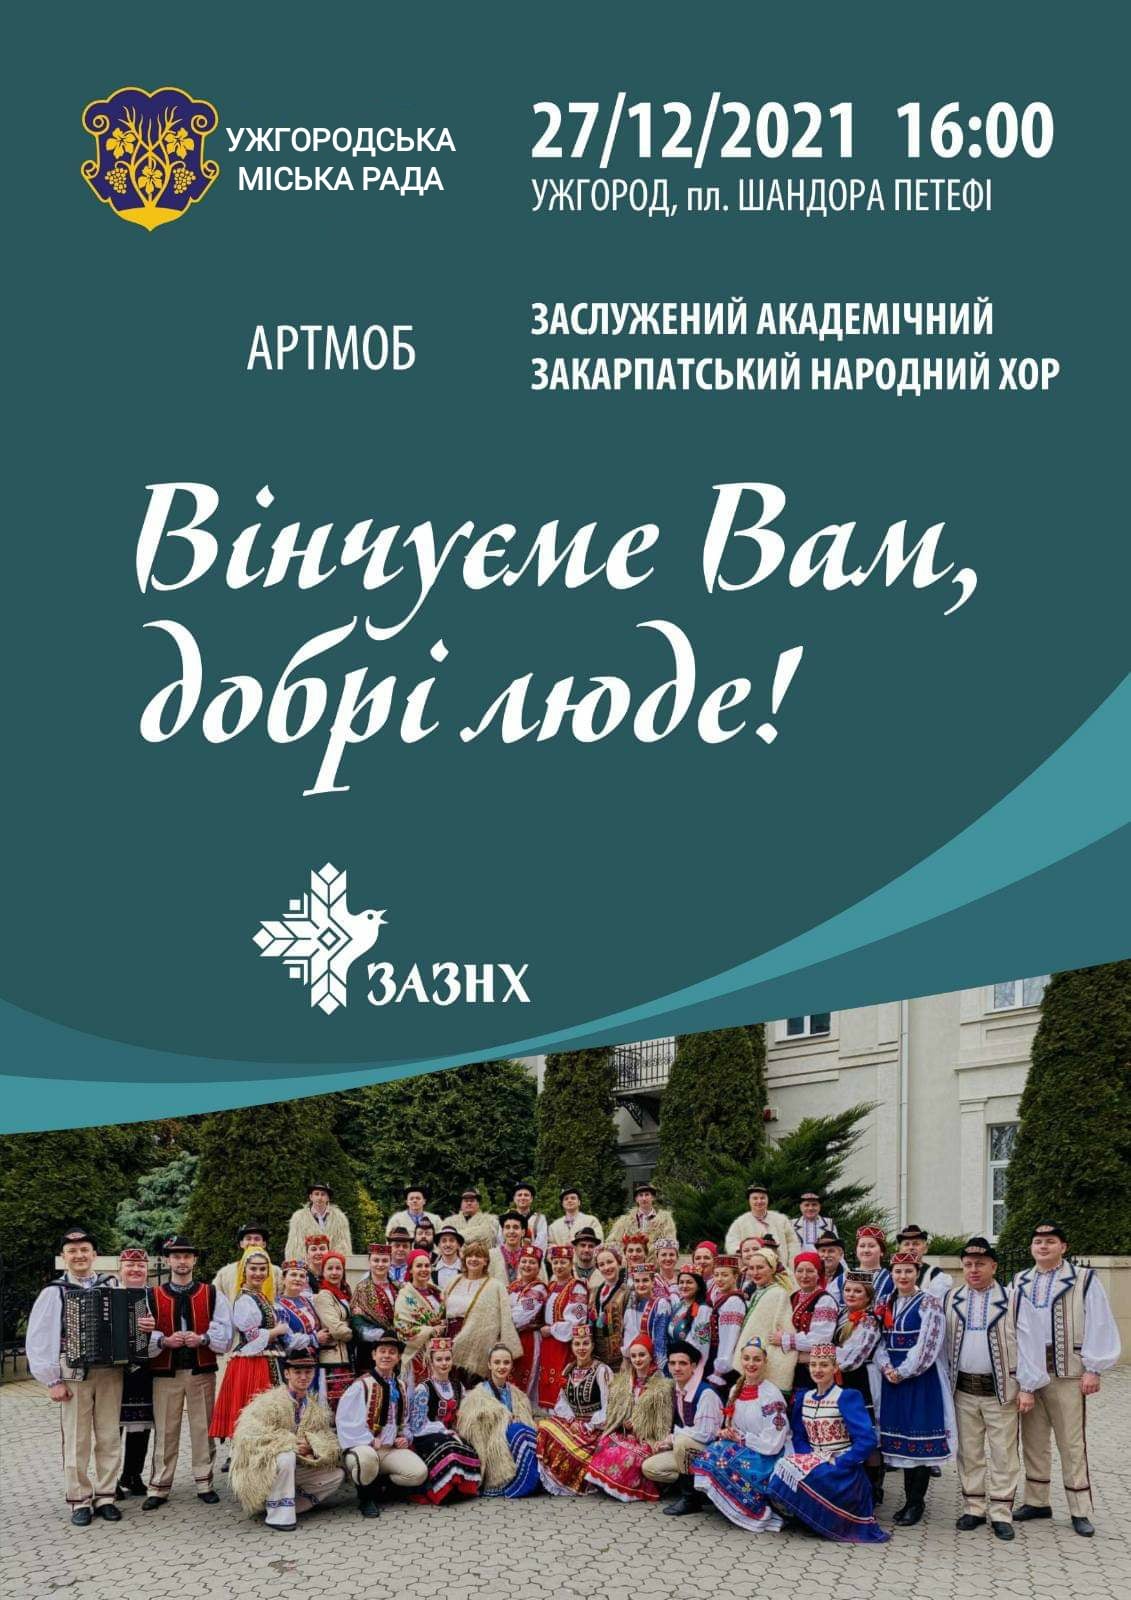 Закарпатський народний хор влаштує в Ужгороді артмоб “Вінчуєме вам, добрі люди”